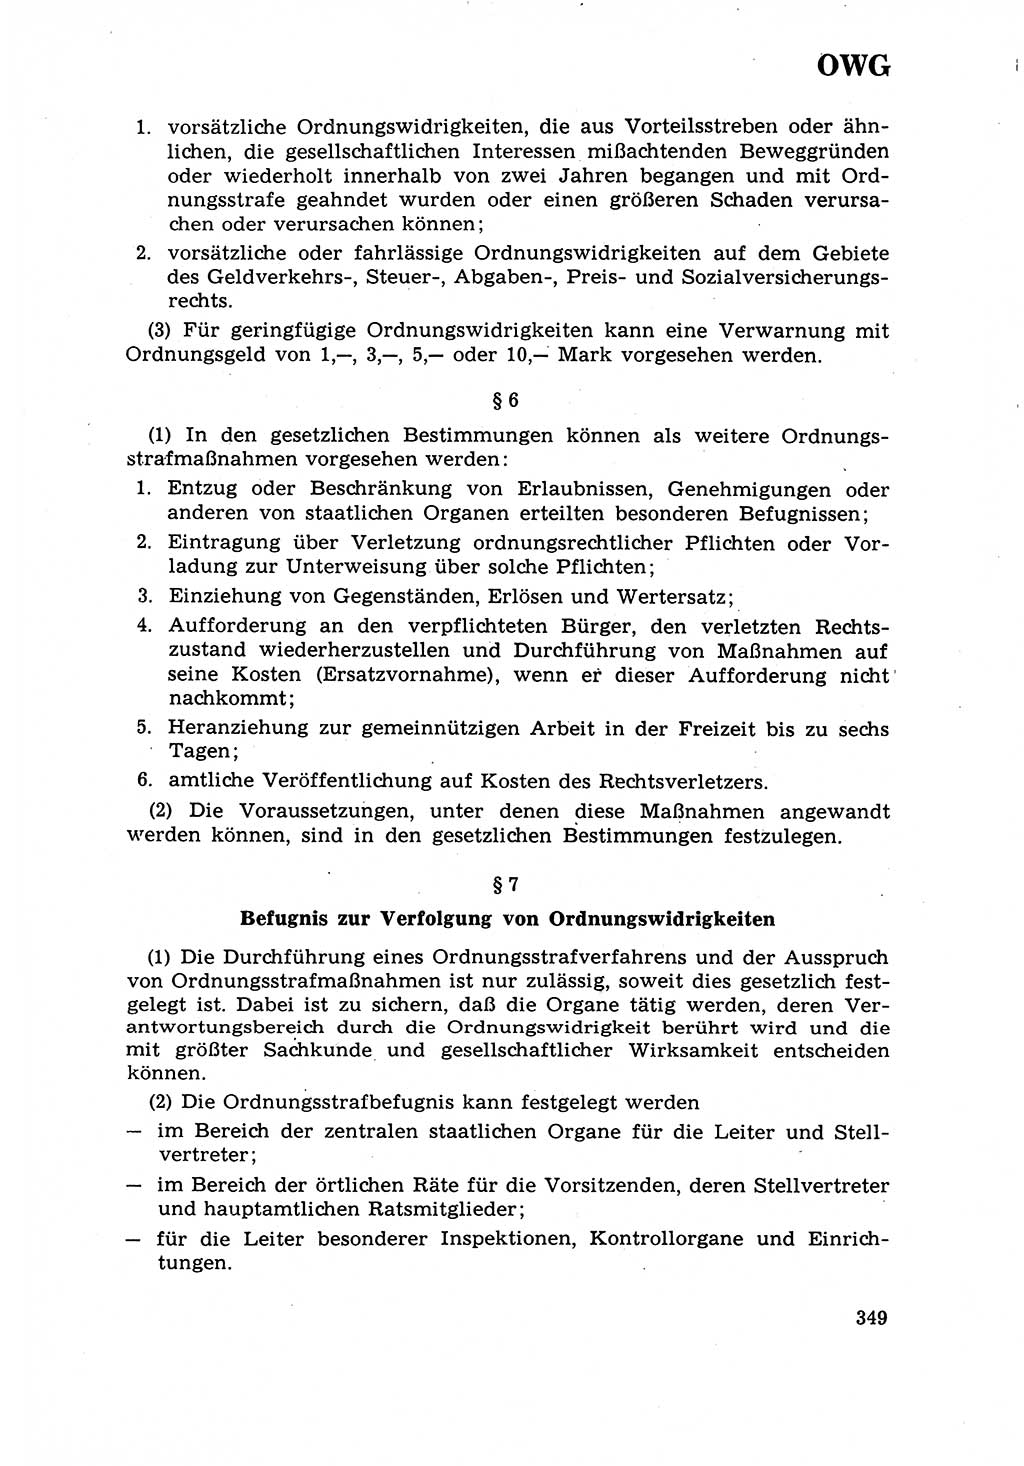 Strafrecht [Deutsche Demokratische Republik (DDR)] 1968, Seite 349 (Strafr. DDR 1968, S. 349)